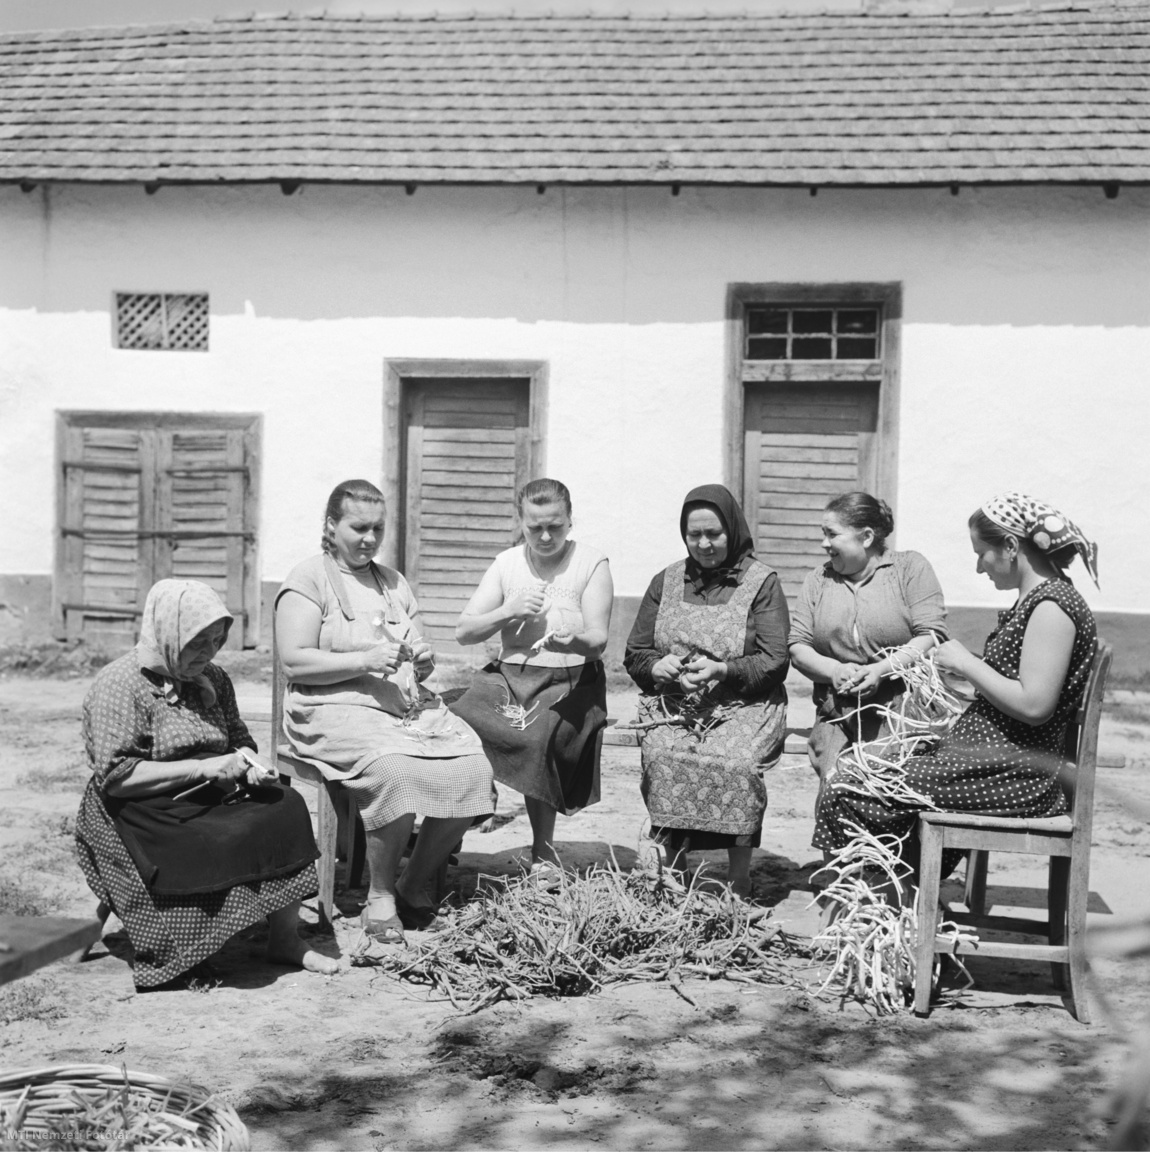 Baks, 1959. augusztus 1. Az emésztési és bőrproblémákra használt fehérmályva (ziliz) gyökerét hámozzák asszonyok a Herbária vállalat gyógynövénygyűjtő telepének udvarán ( / MTI Nemzeti Fotótár)